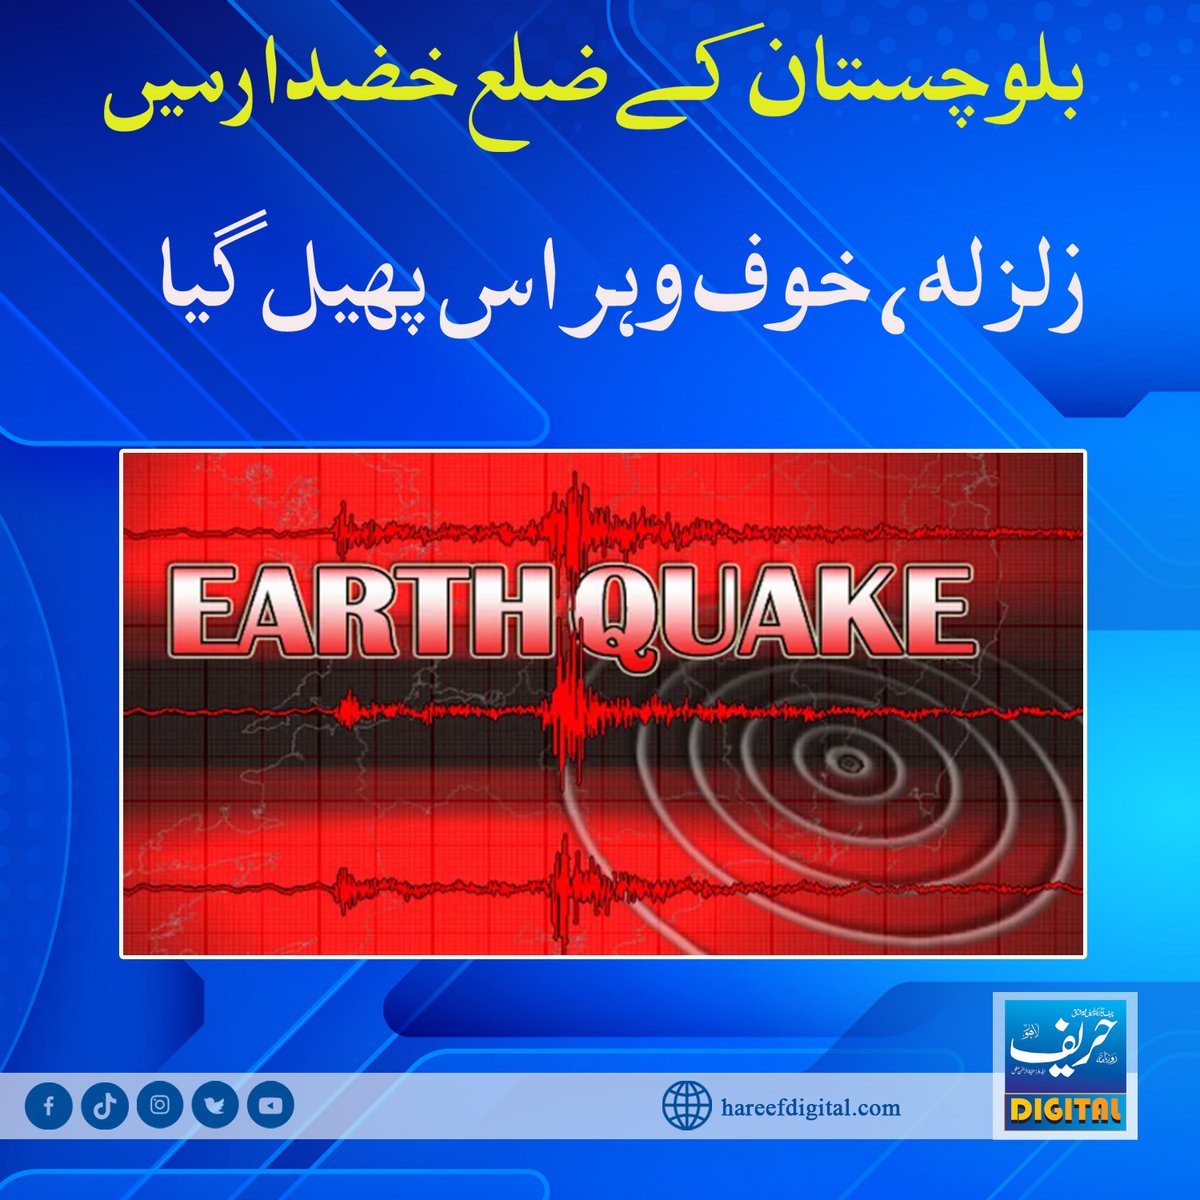 بلوچستان کےضلع خضدارمیں زلزلہ،خوف وہراس پھیل گیا
hareefdigital.com/earthquake-in-…
#hareefdigital
#Pakistan
#earthquake
#earthofficial
#Balochistan
#district
#virus
#Huzara #EarthDay